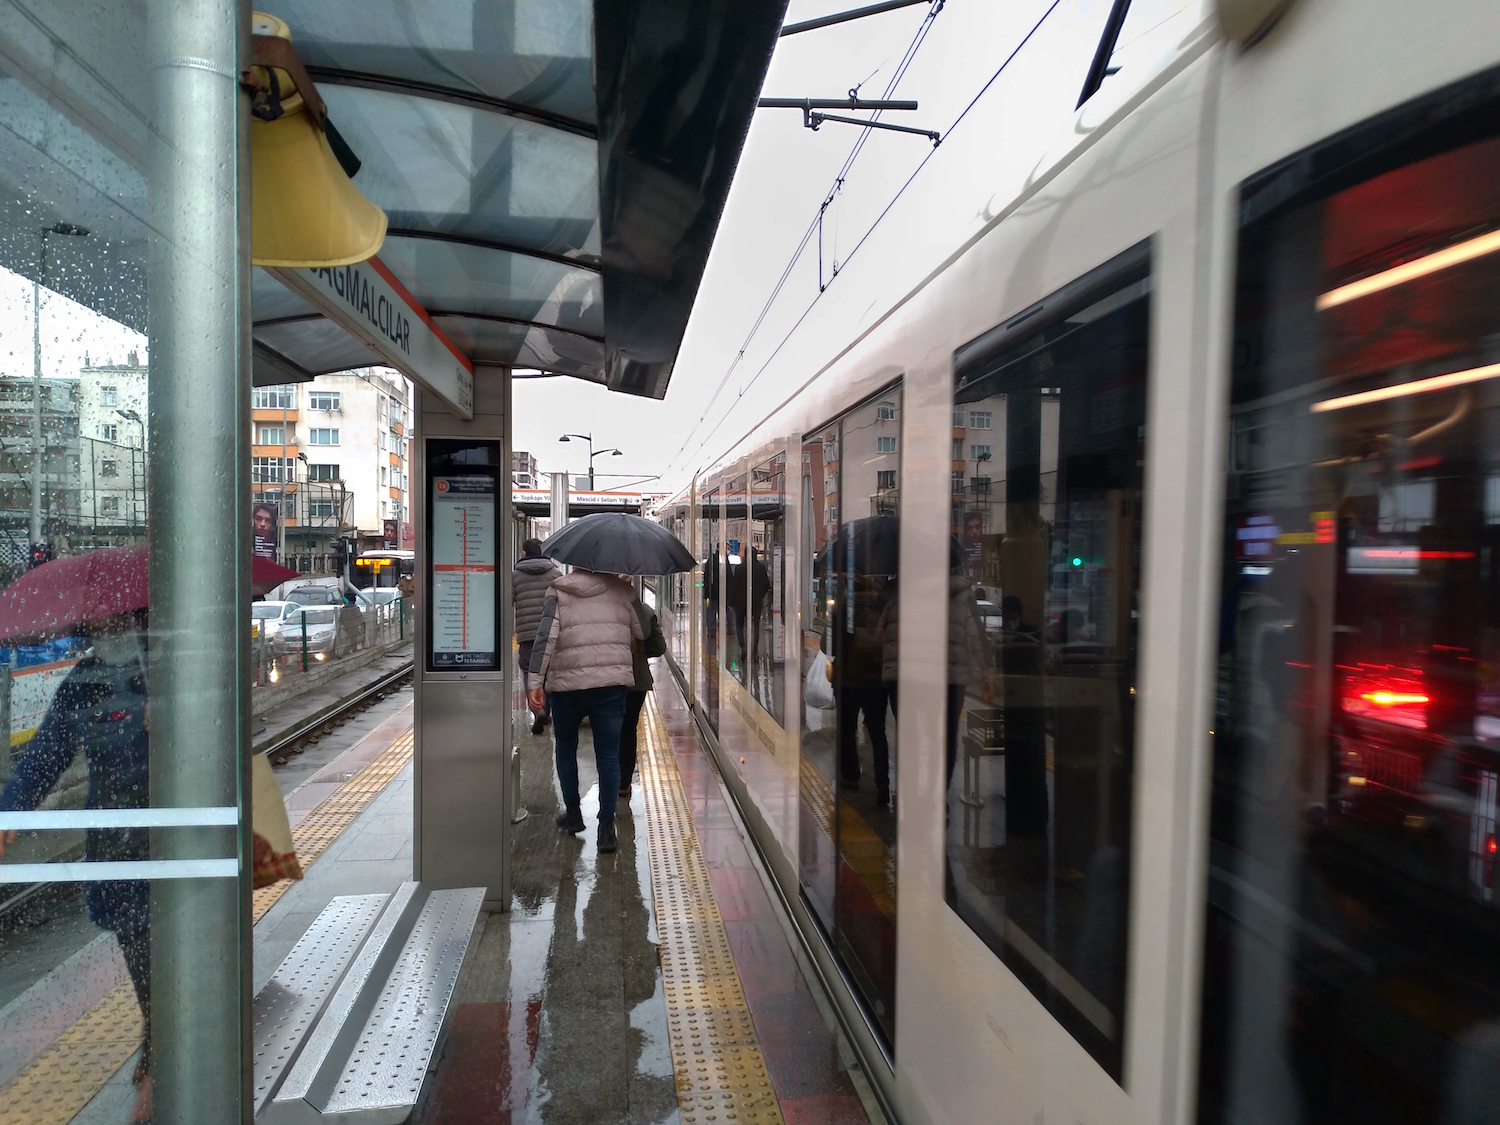 Le tram numéro 4 est une ligne nouvelle, mise en place pour desservir des quartiers de construction récente au nord d’Istanbul. Les transports en commun se sont beaucoup développés au cours des dernières années dans la métropole © Globe Reporters